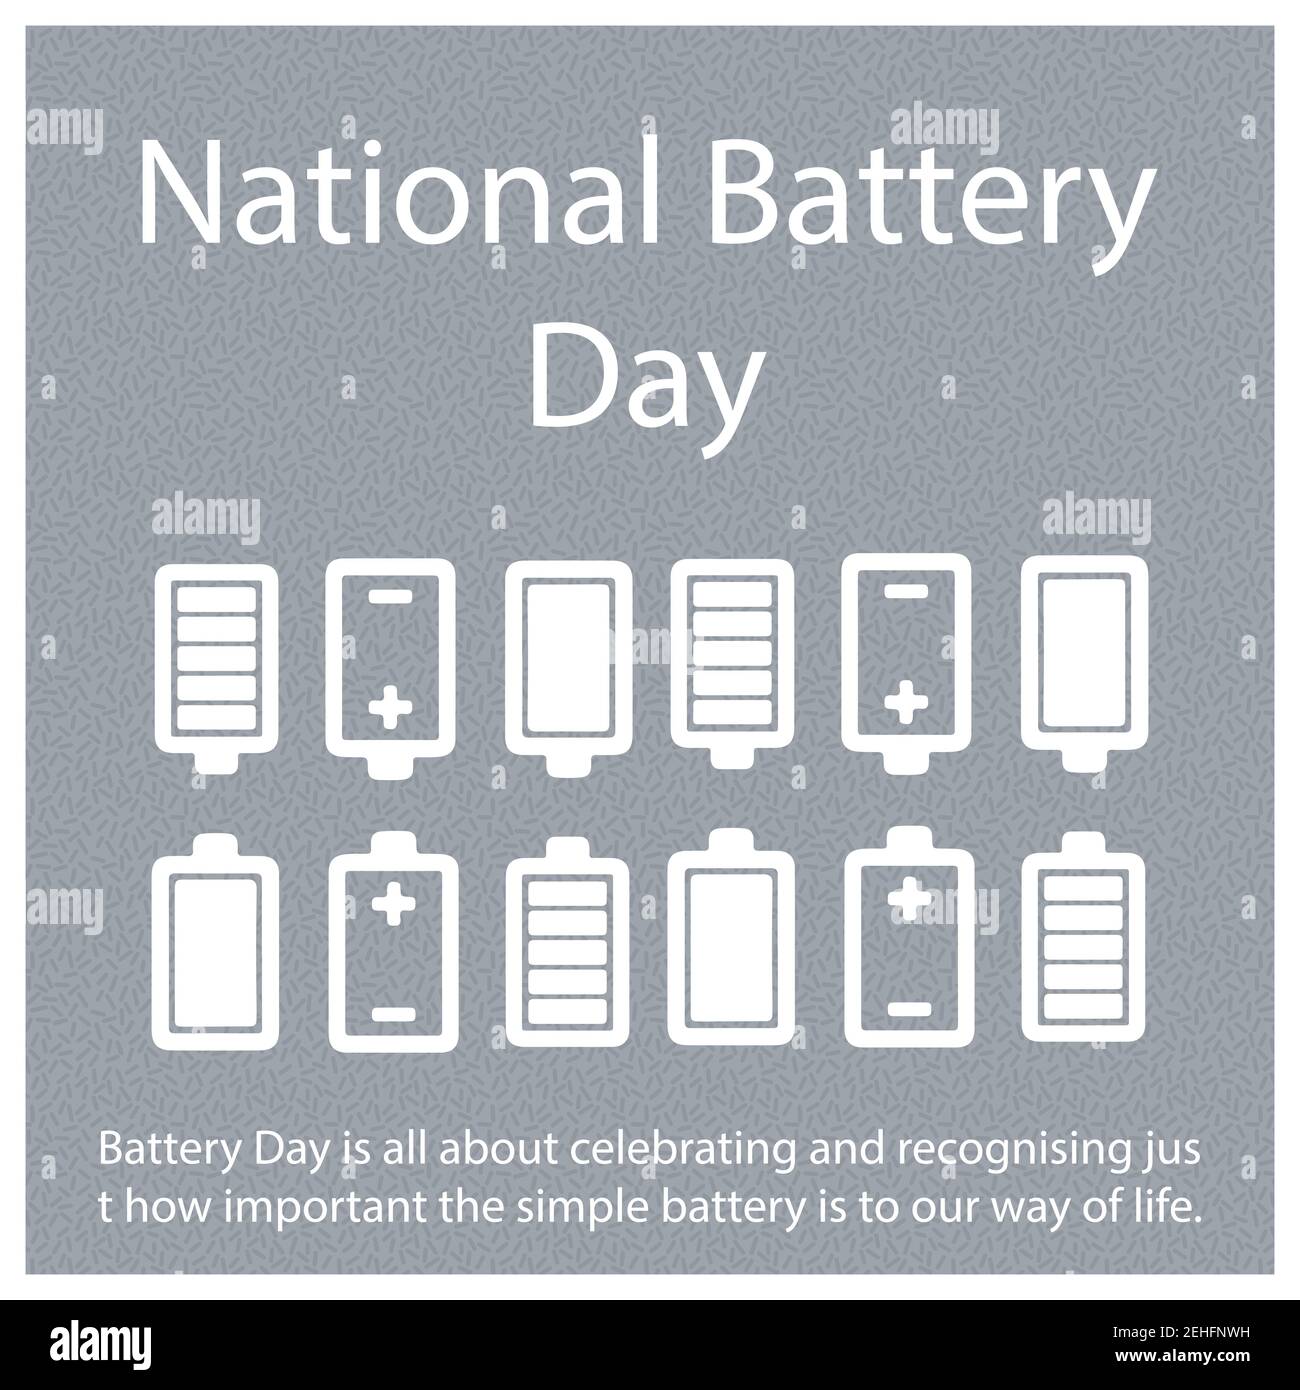 Beim Battery Day geht es darum, zu feiern und zu erkennen, wie wichtig die einfache Batterie für unsere Lebensweise ist. Stock Vektor